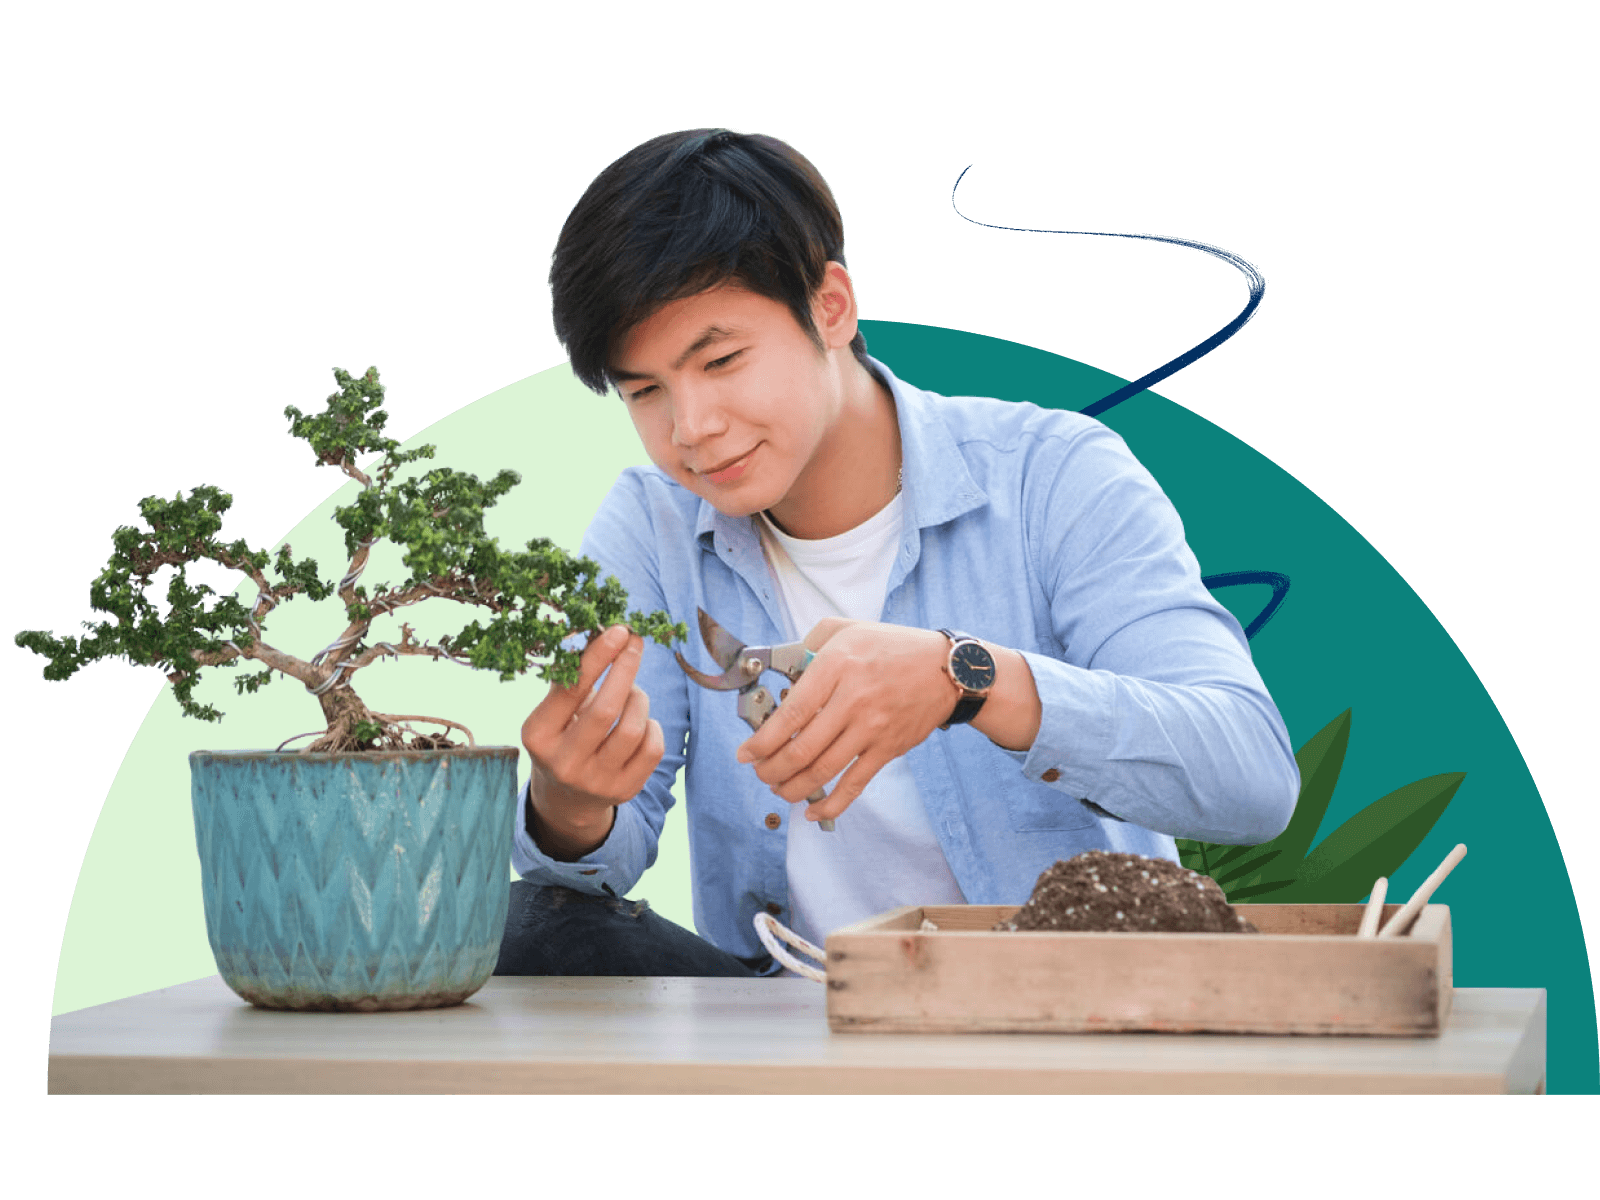 Man tending to bonsai plant